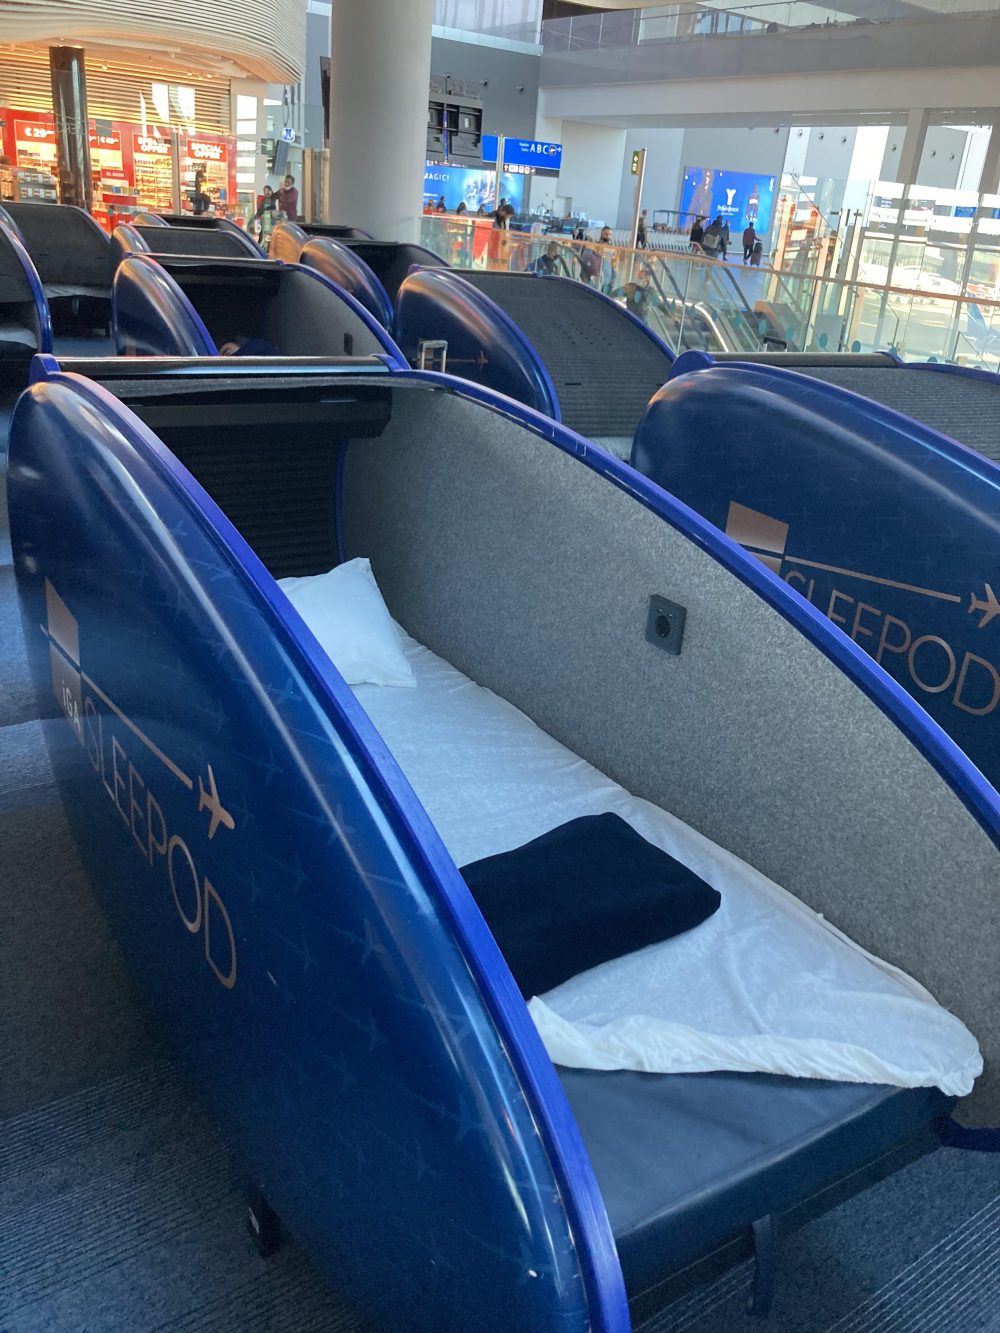 El aeropuerto de Estambul tiene cápsulas de alquiler para echar siestas